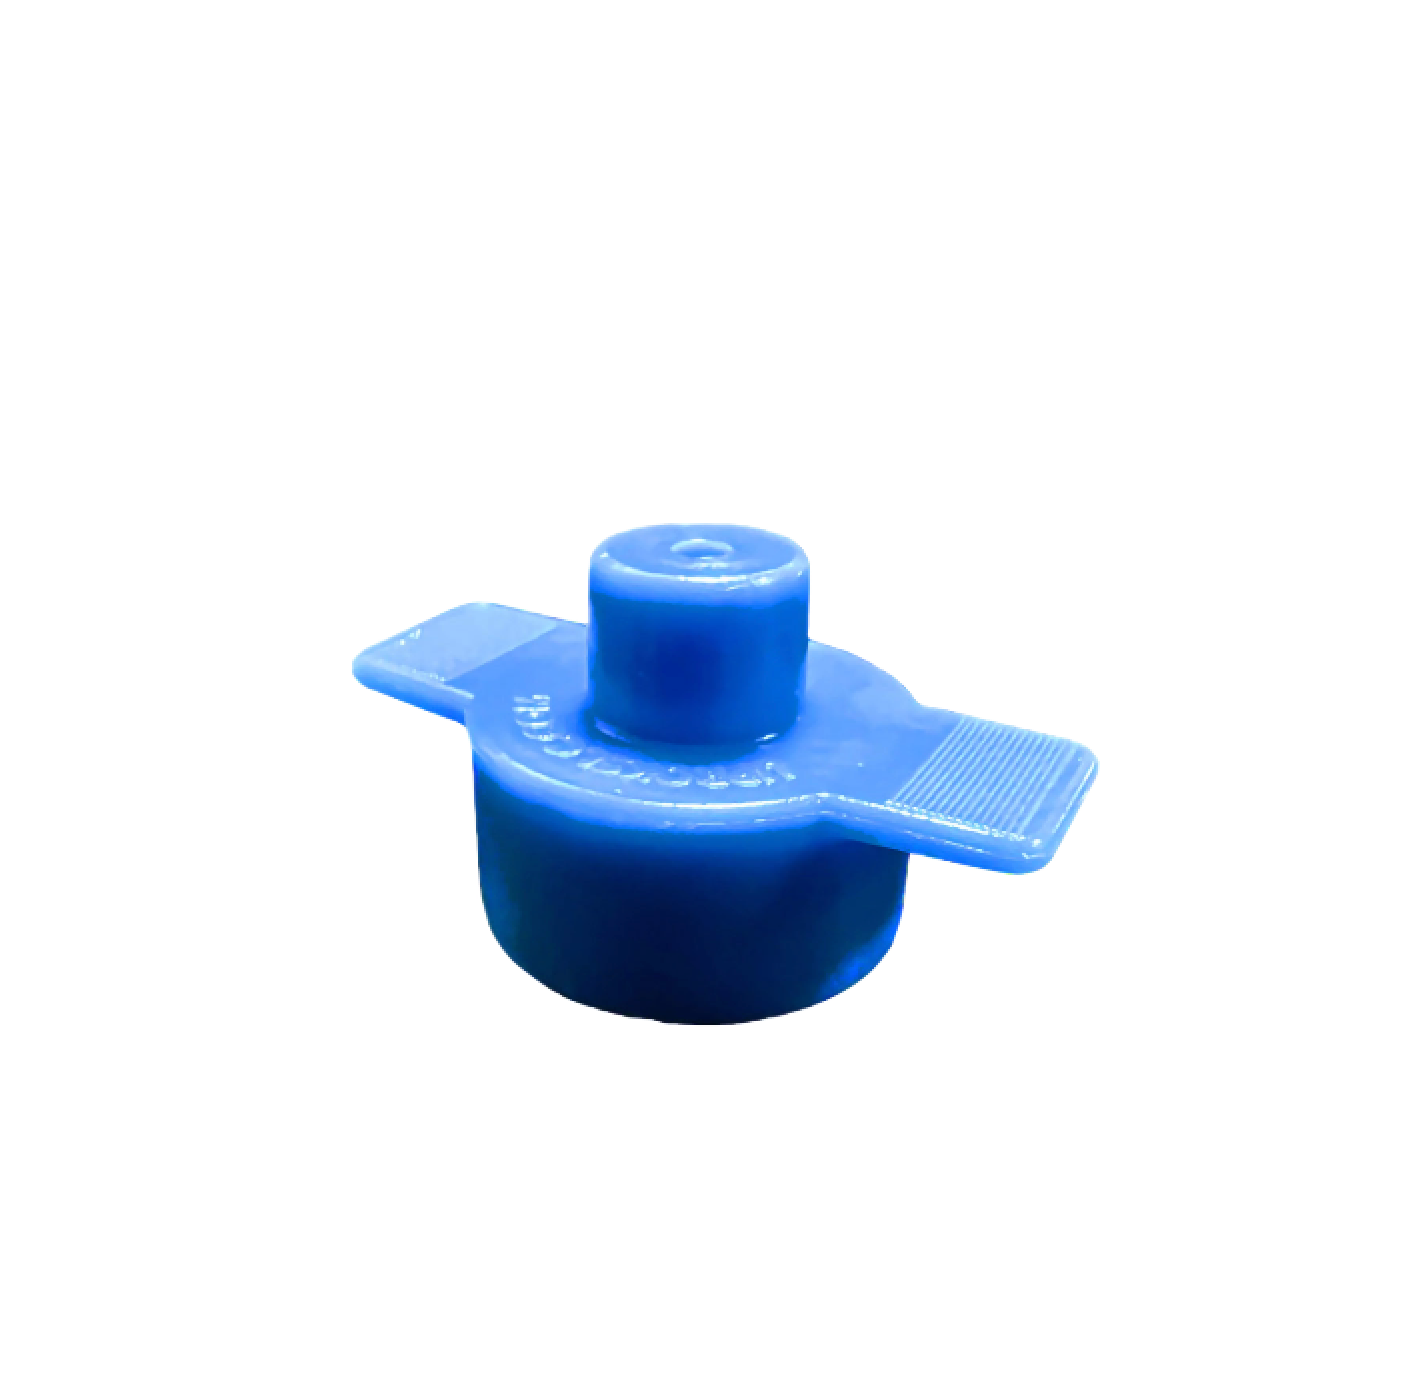 Uprok Spray Paint Cap Blue Adapter